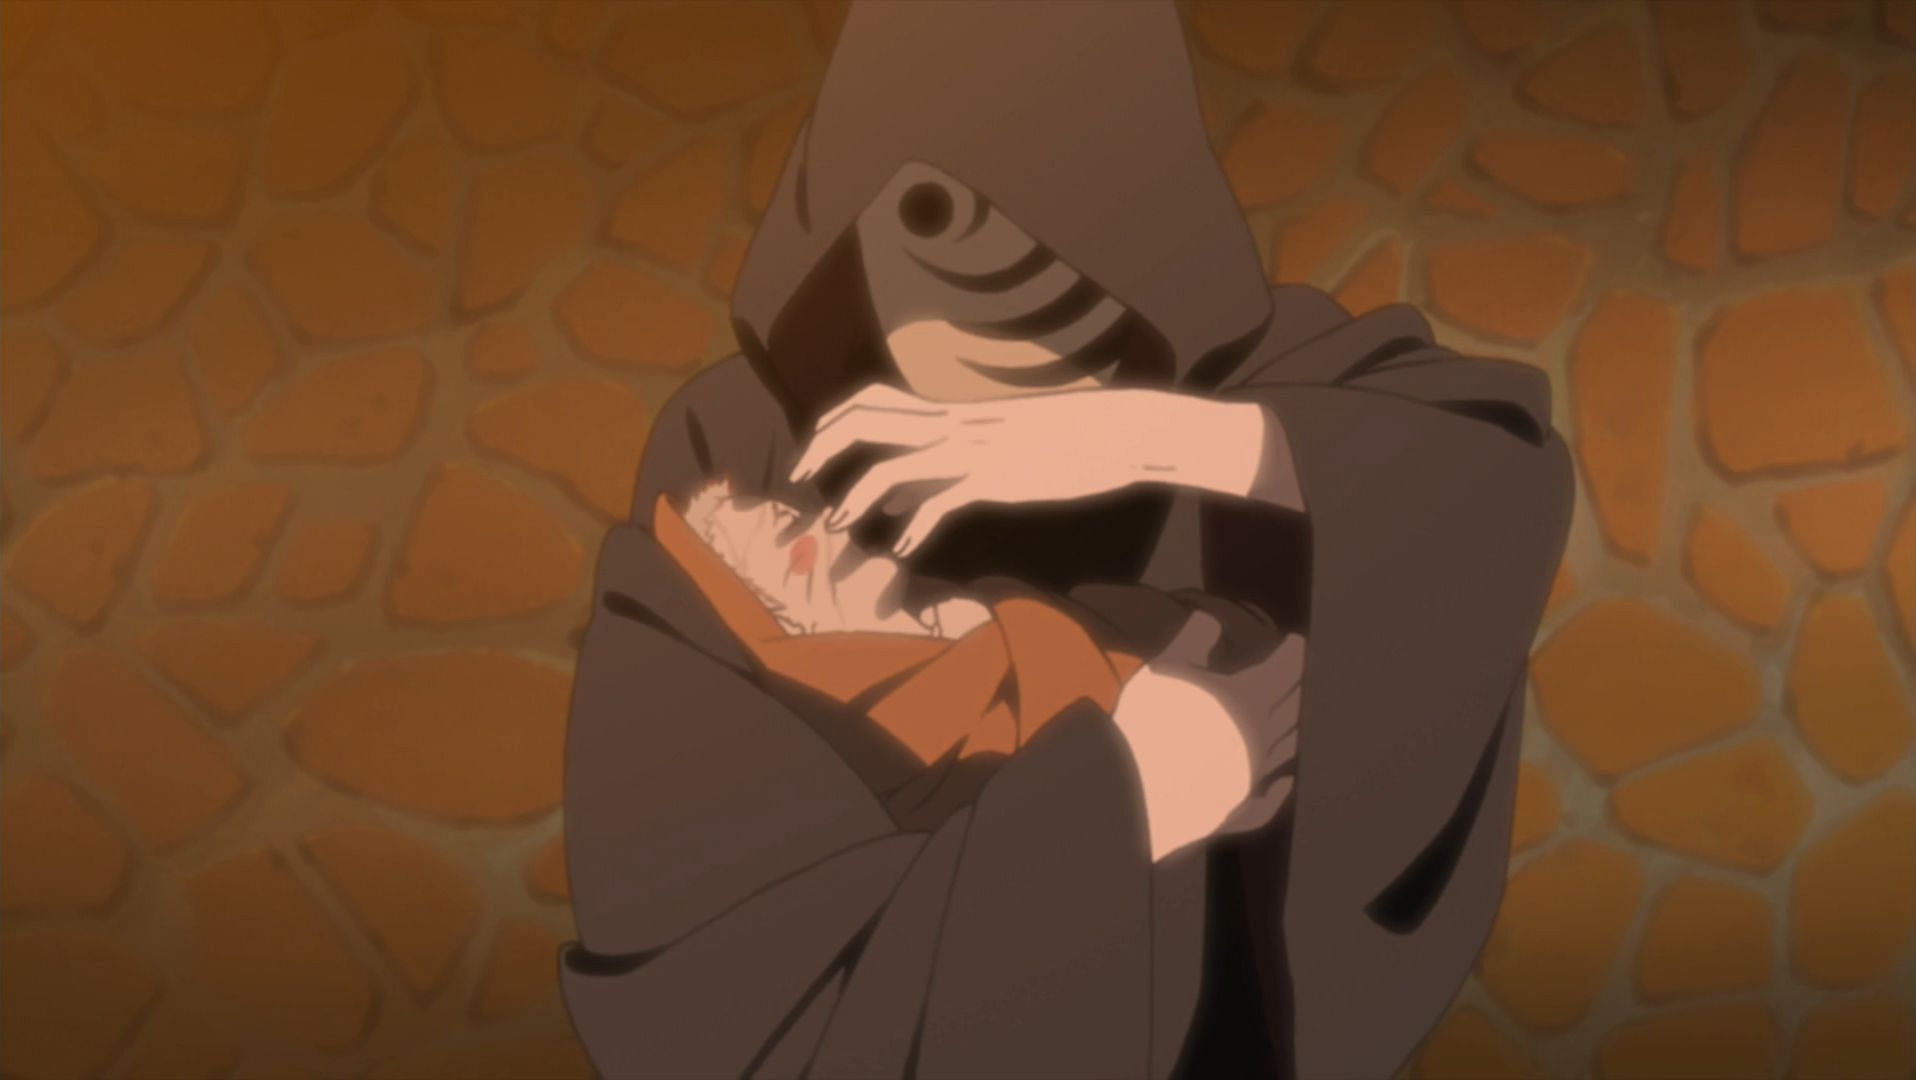 Obito threatening to kill Naruto (Image via Studio Pierrot)